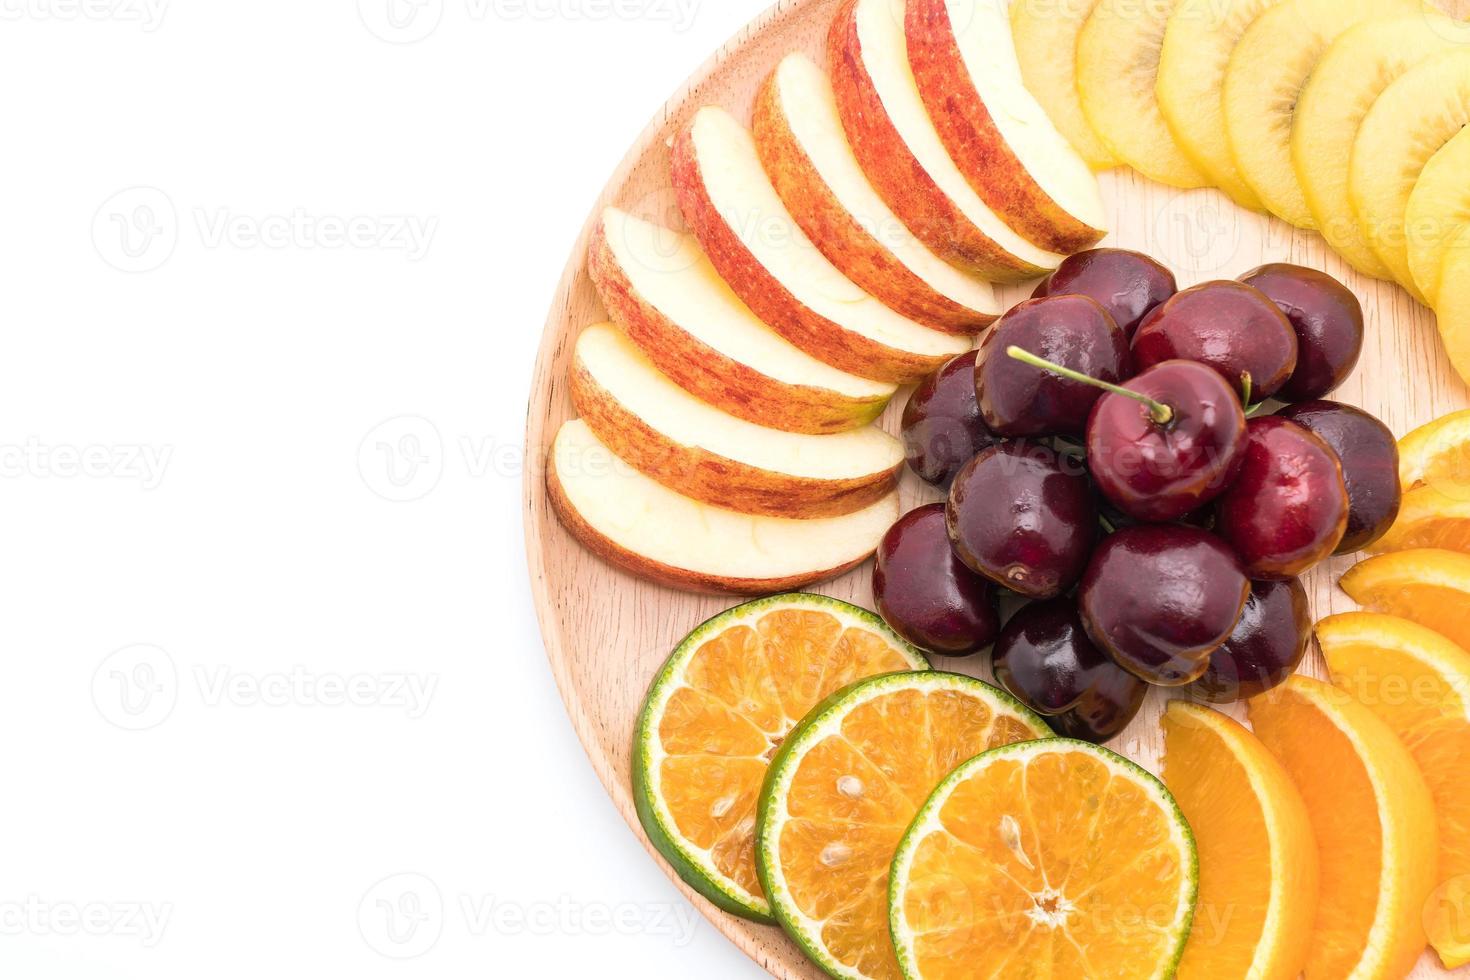 gemengd gesneden fruit in houten bord foto